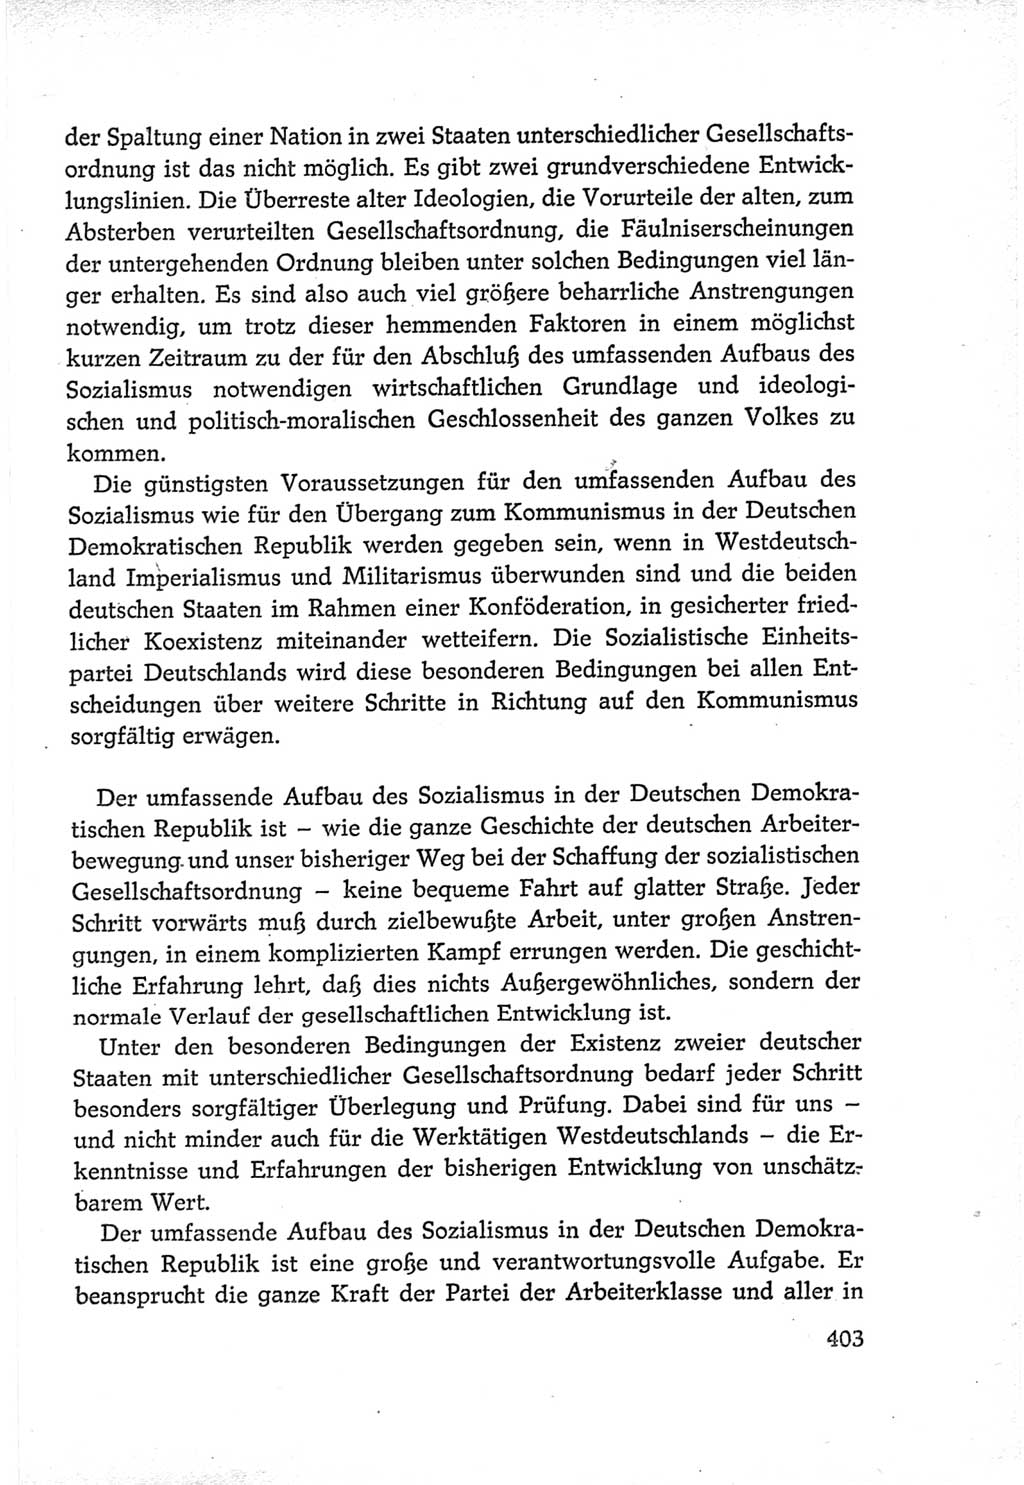 Protokoll der Verhandlungen des Ⅵ. Parteitages der Sozialistischen Einheitspartei Deutschlands (SED) [Deutsche Demokratische Republik (DDR)] 1963, Band Ⅳ, Seite 403 (Prot. Verh. Ⅵ. PT SED DDR 1963, Bd. Ⅳ, S. 403)